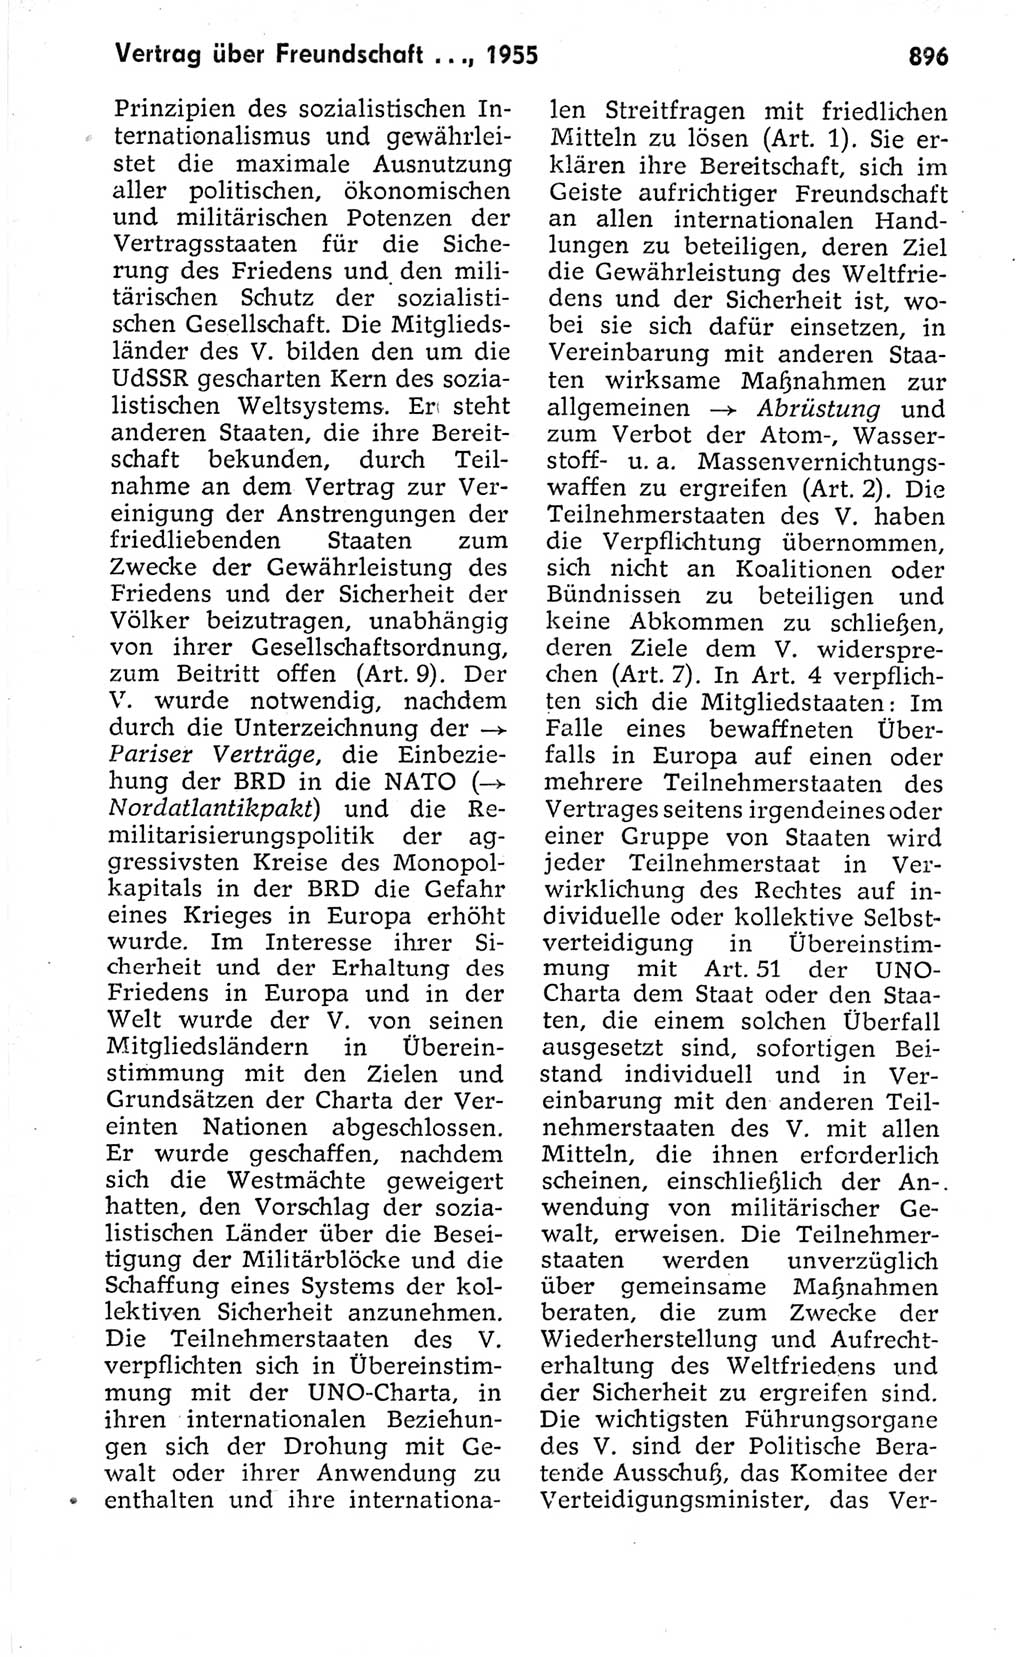 Kleines politisches Wörterbuch [Deutsche Demokratische Republik (DDR)] 1973, Seite 896 (Kl. pol. Wb. DDR 1973, S. 896)